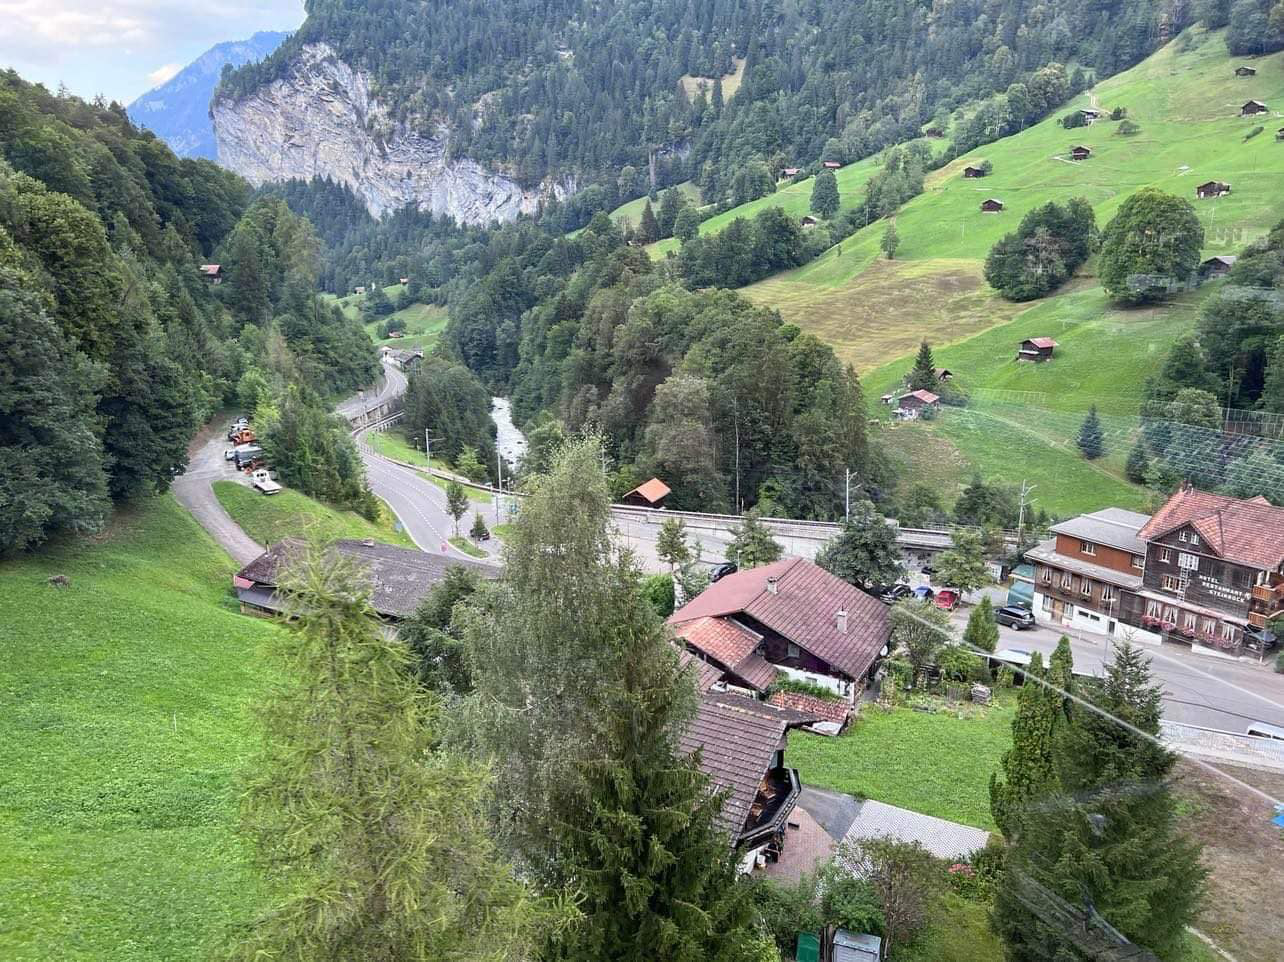 Kinh nghiệm du lịch Thụy Sỹ cho các gia đình có con nhỏ - Ảnh 3.